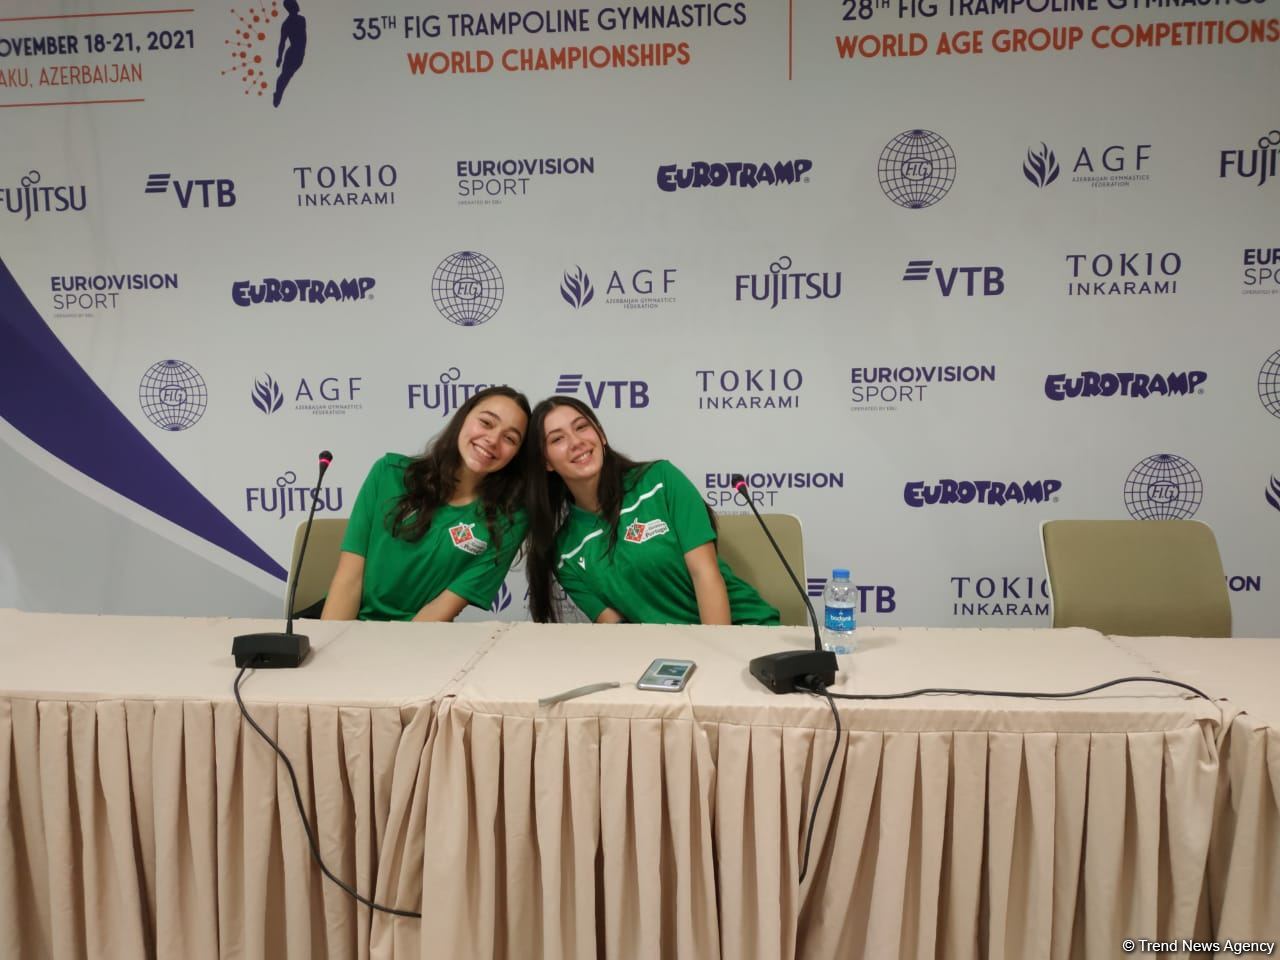 На соревнованиях в Баку надеемся показать хороший результат – португальские гимнастки